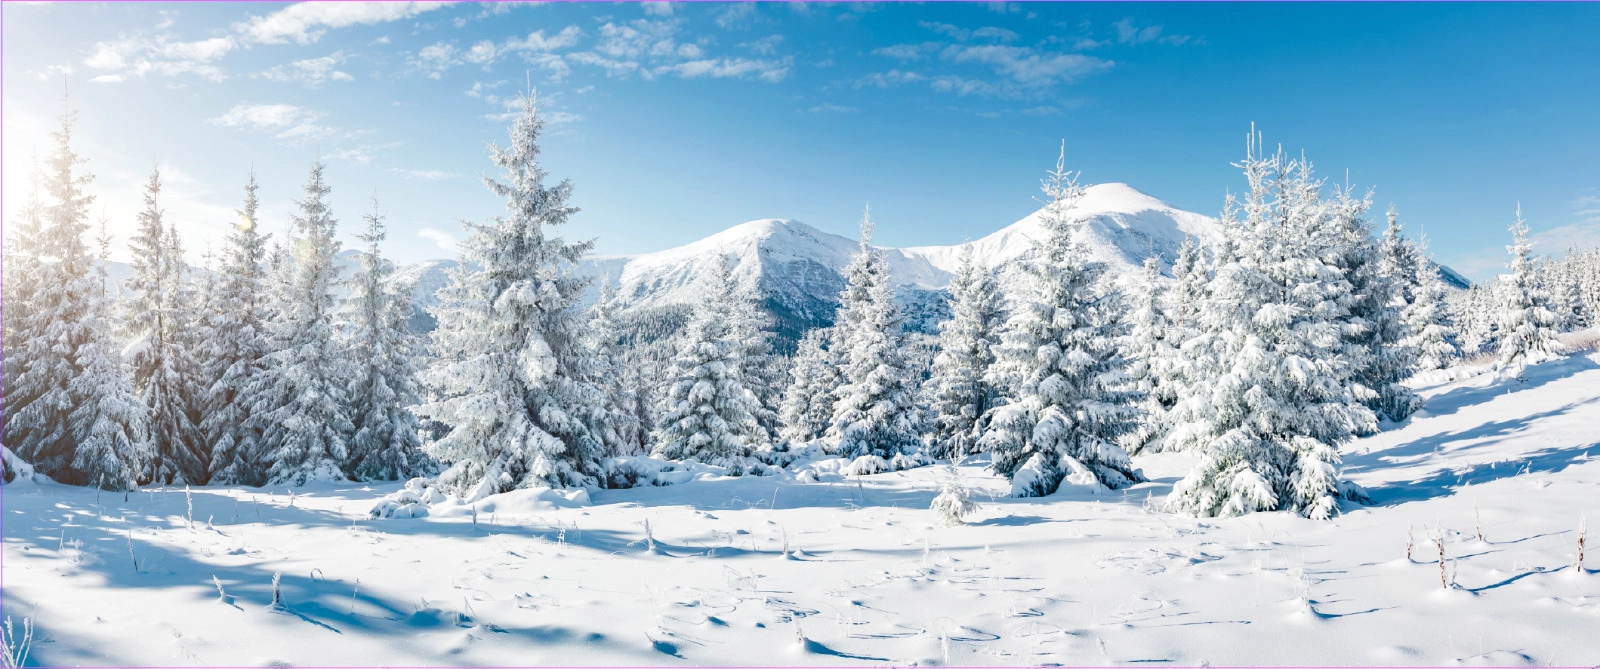 Apres ski/Winterdecoratie - Kerstbomen in de winter